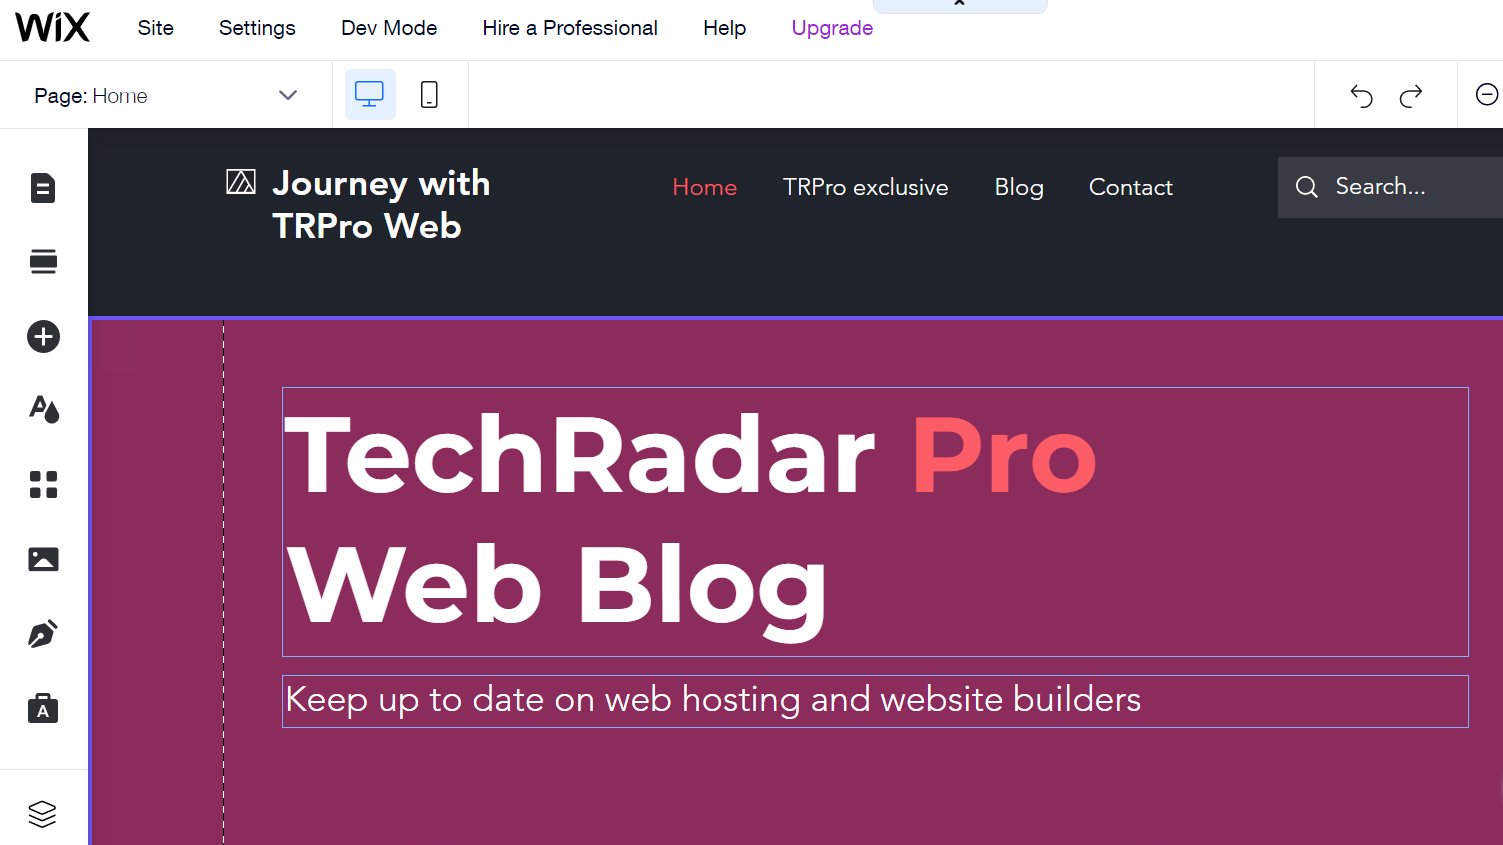 Zrzut ekranu naszego bloga TechRadar Pro utworzonego za pomocą Wix